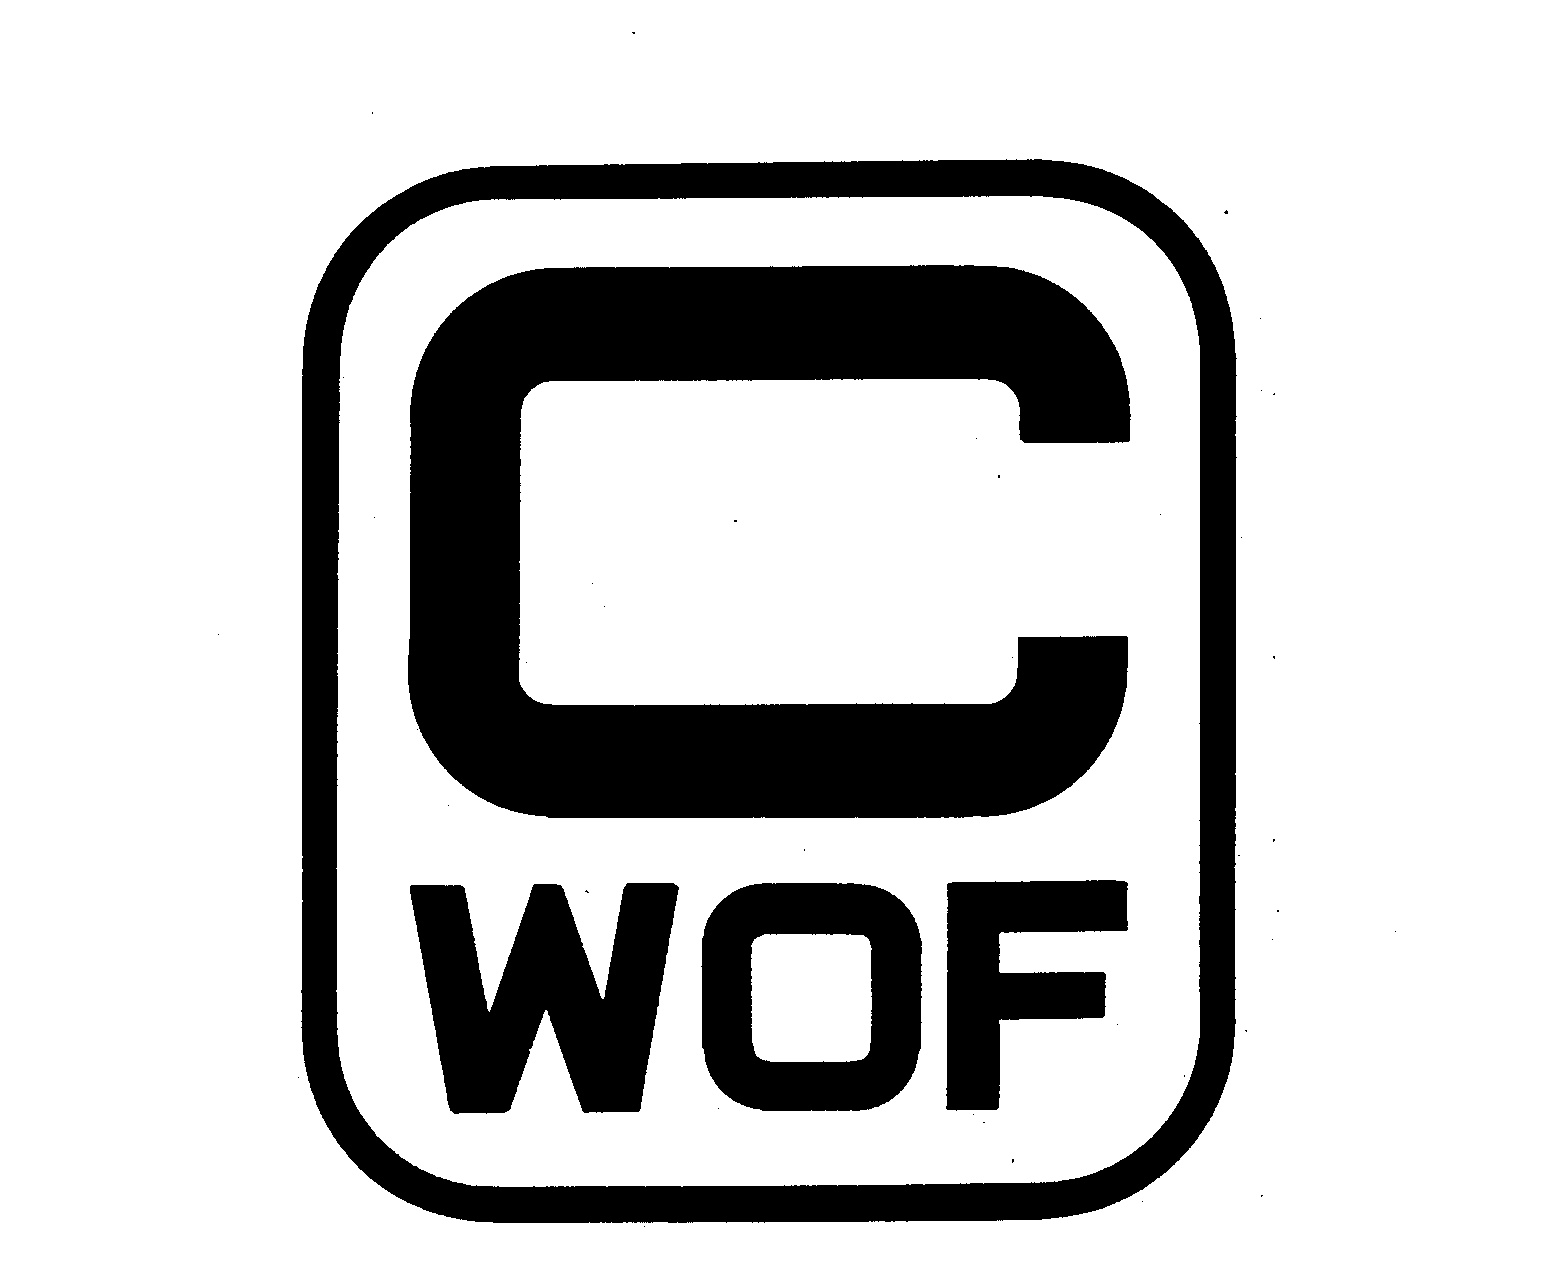  C WOF